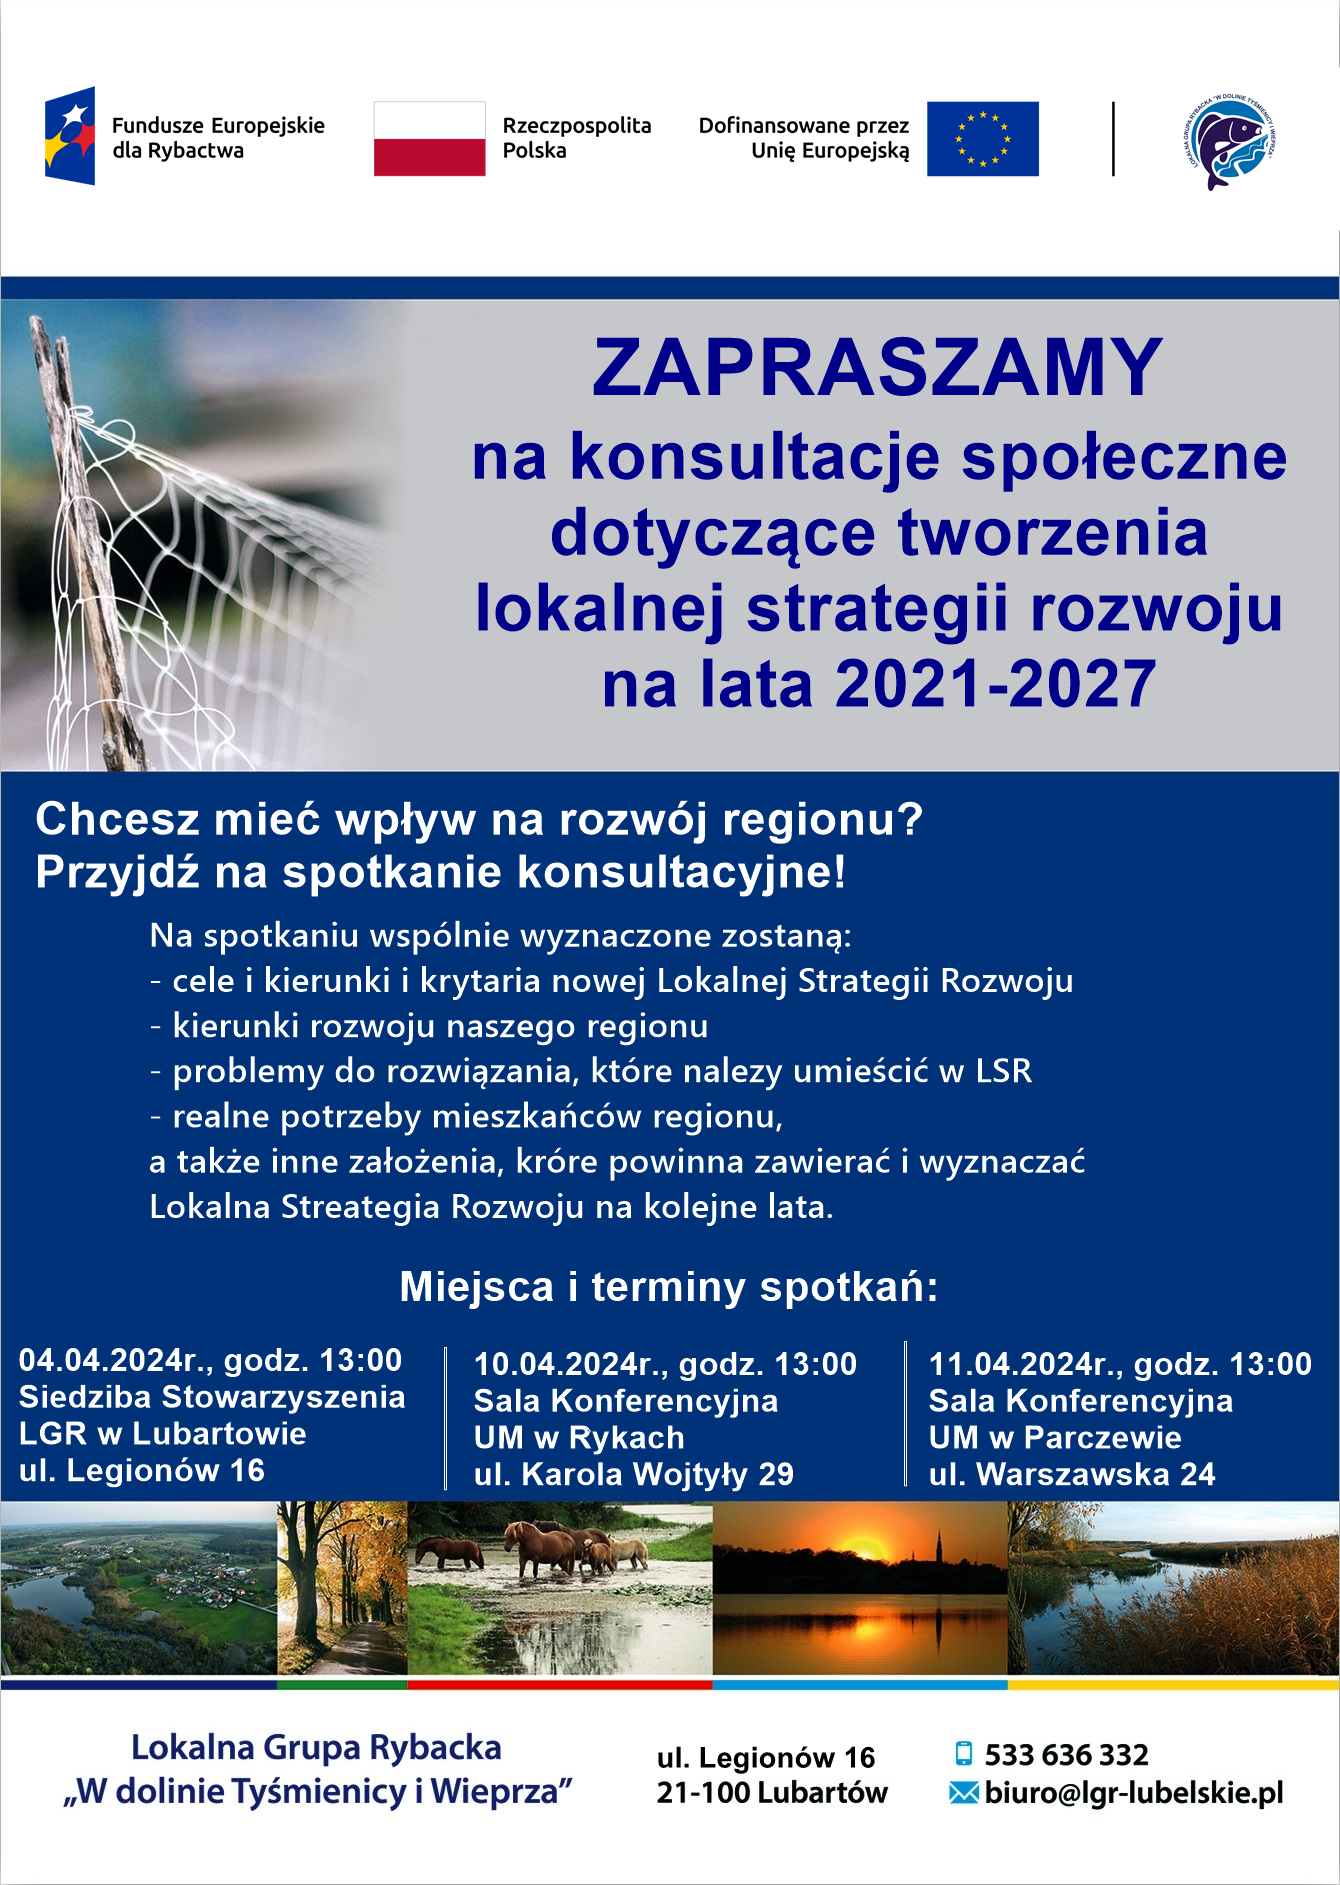 Plakat zapraszający na konsultacje społeczne dotyczące rozwoju regionu na lata 2021-2027, z datami i adresami spotkań oraz logotypami organizatorów.